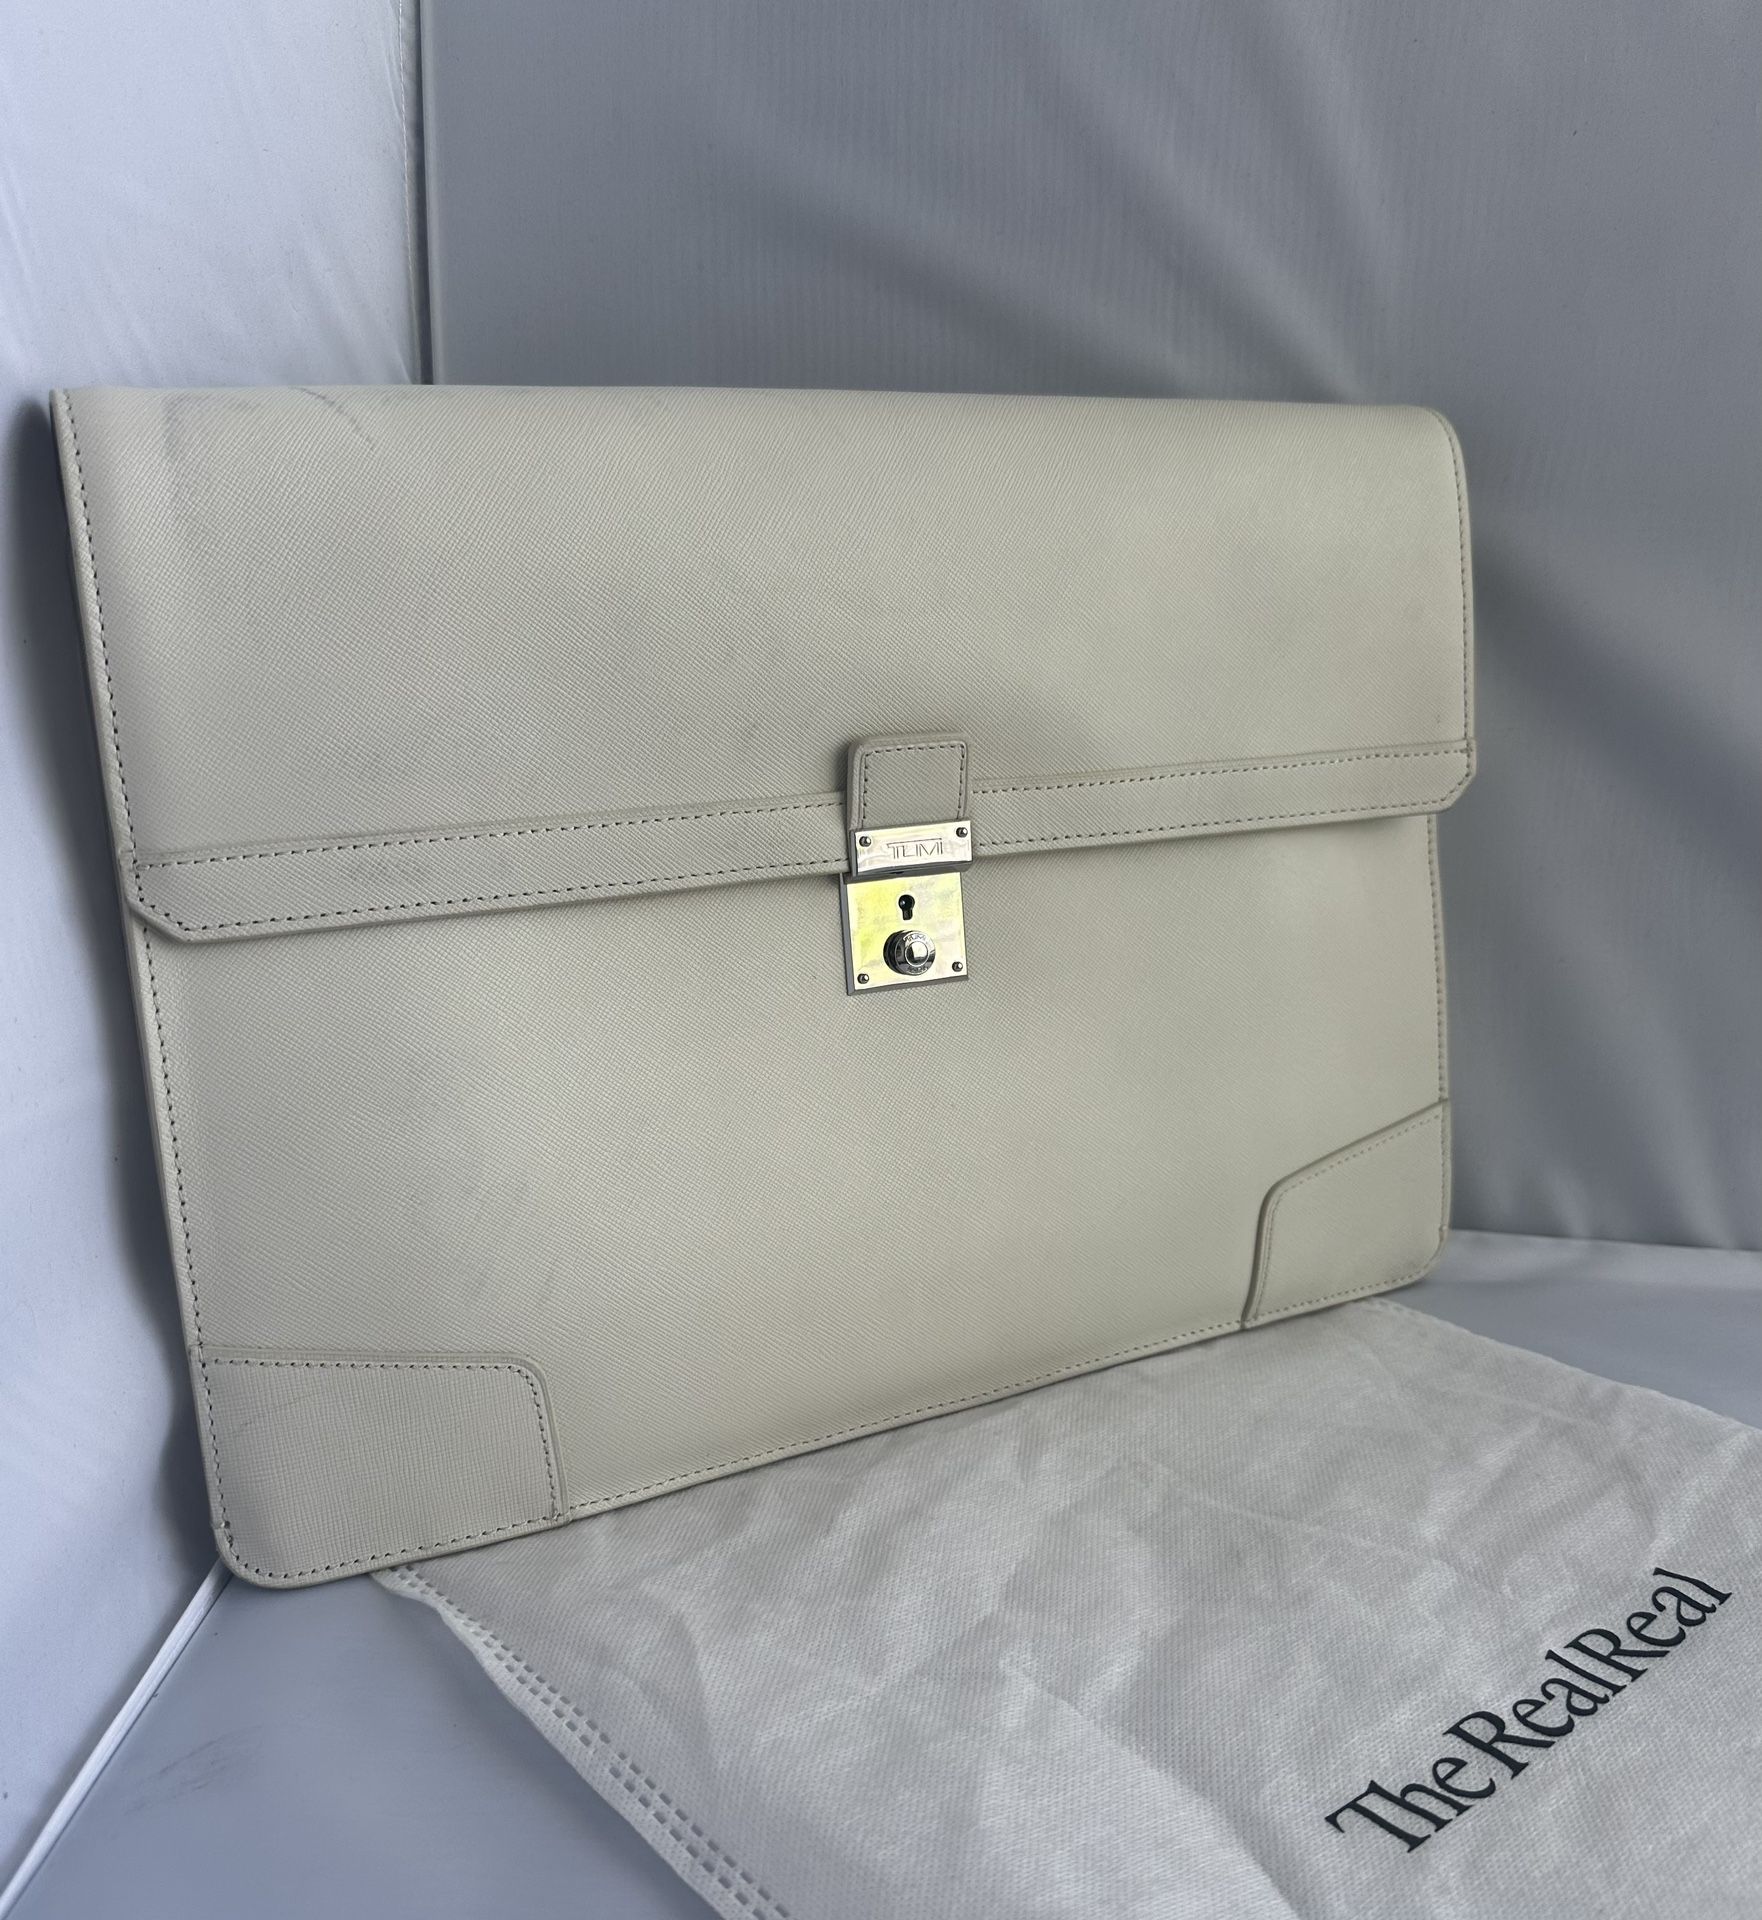 Tumi White Leather Laptop Bag